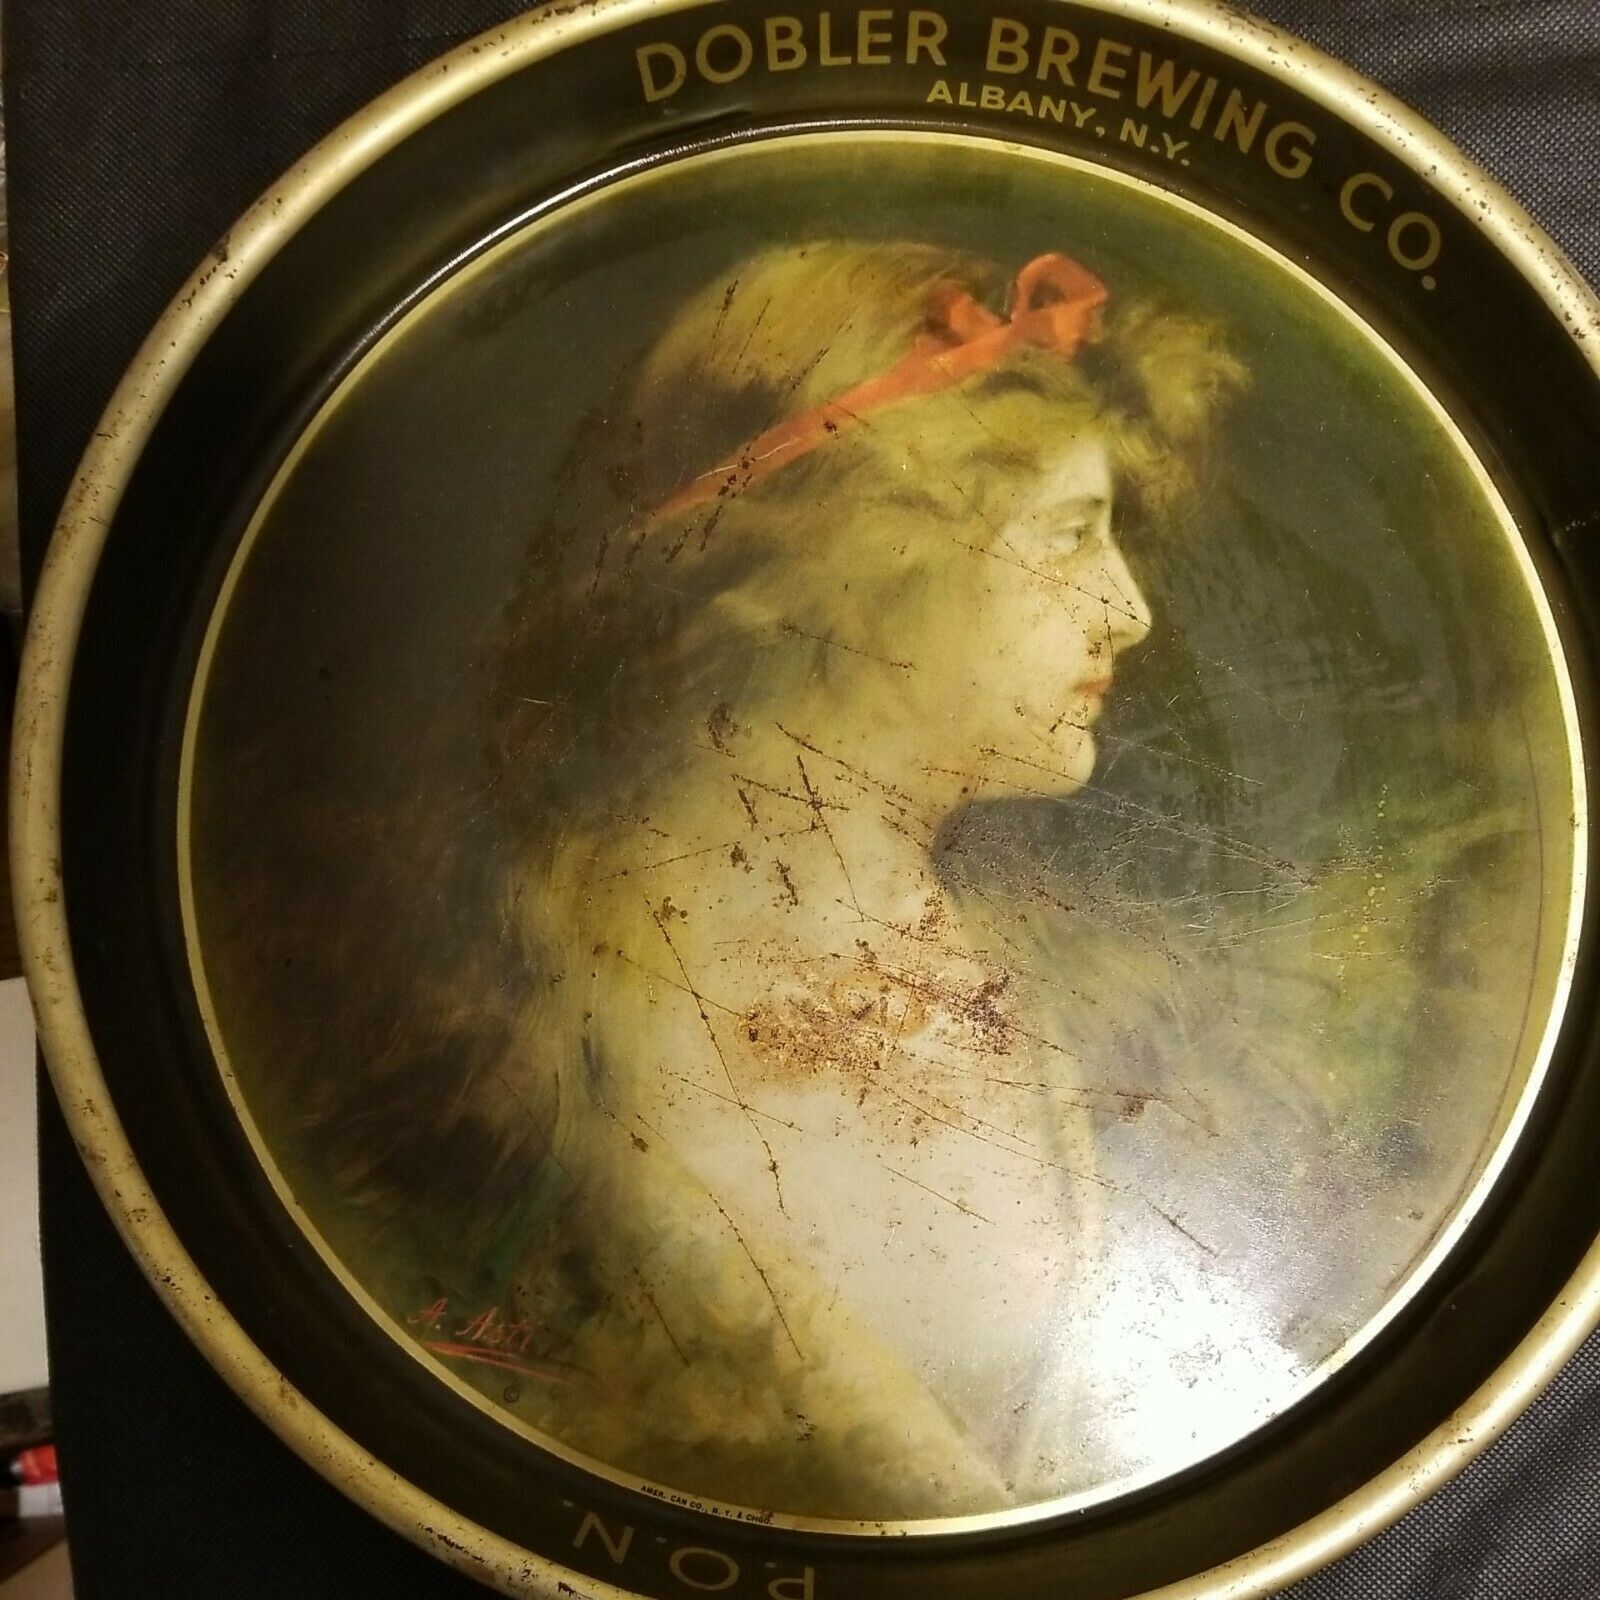 Vintage Dobler Brewing Co. Albany, N. Y. Beer Tray, 13 1/4" In Diameter